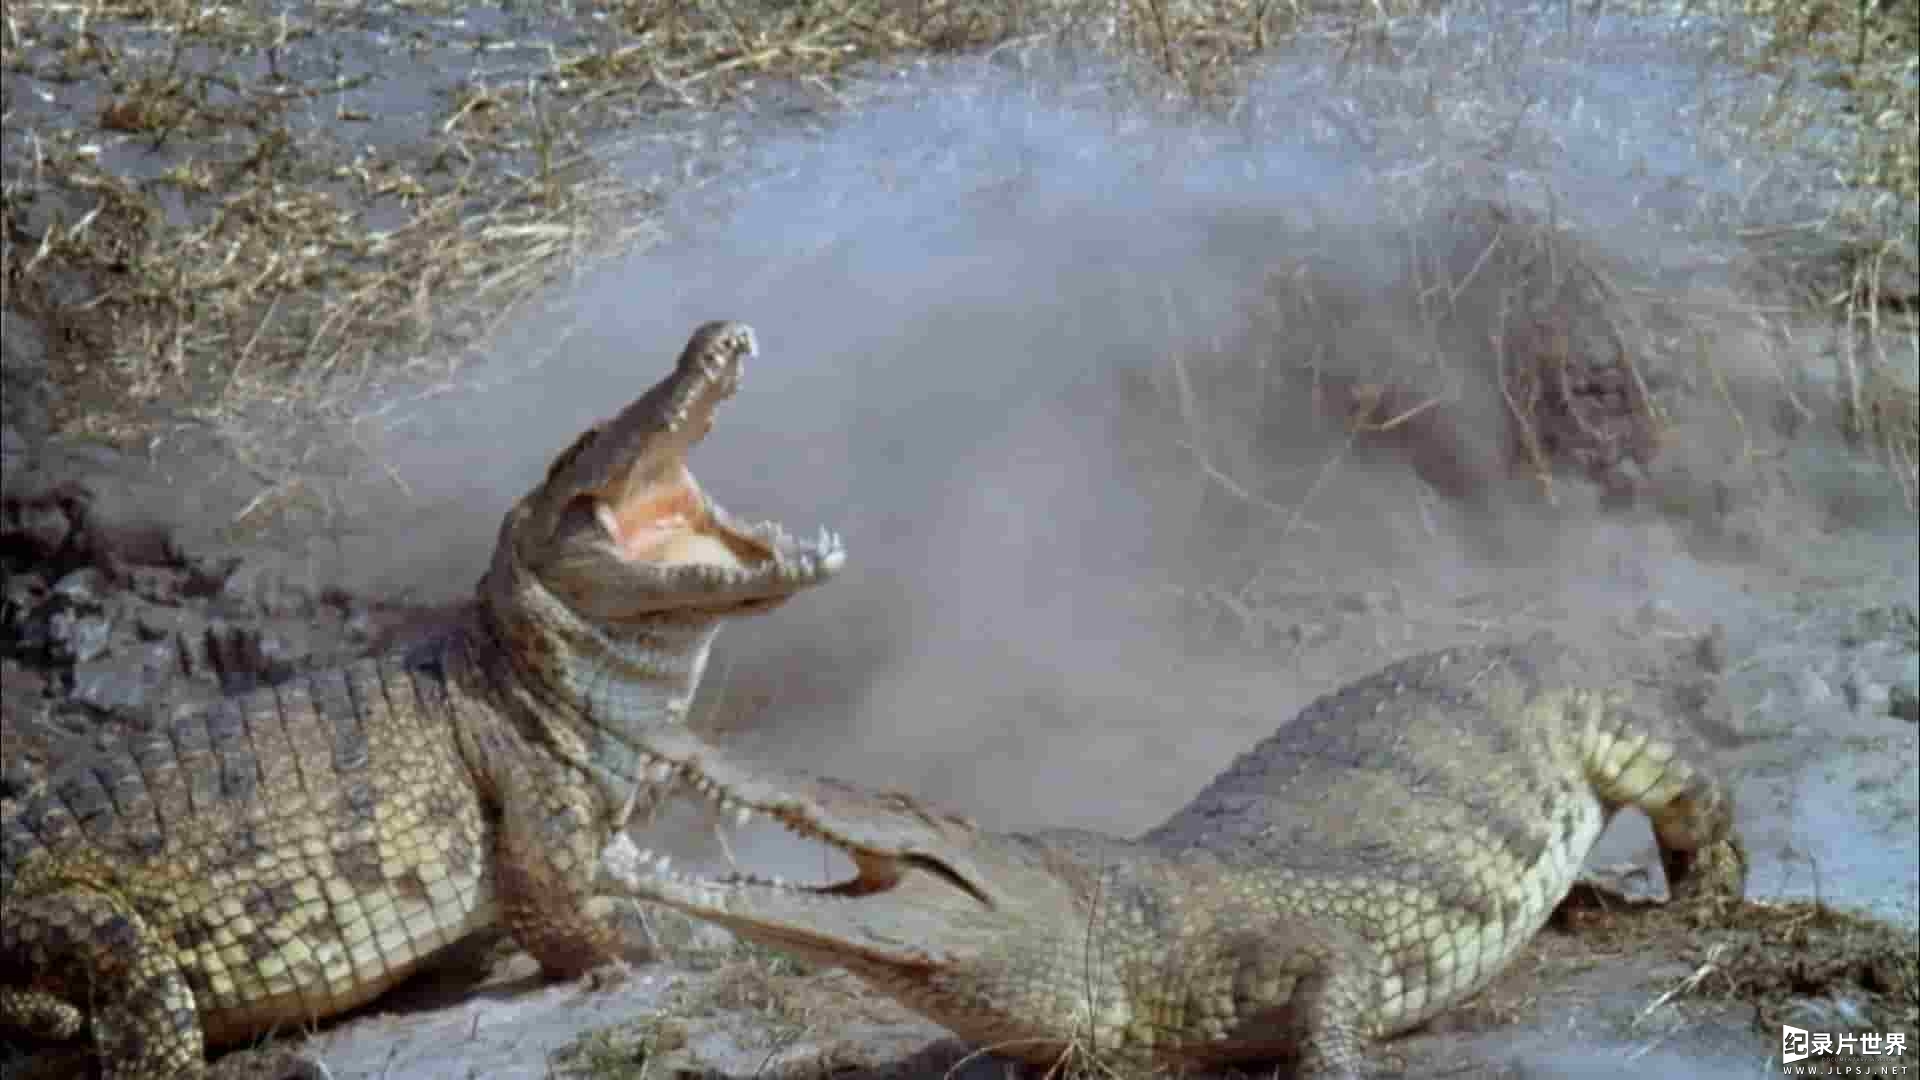  国家地理《鳄鱼的阴暗面/鳄鱼的黑暗面 Dark Side of Crocs 2022》全1集 